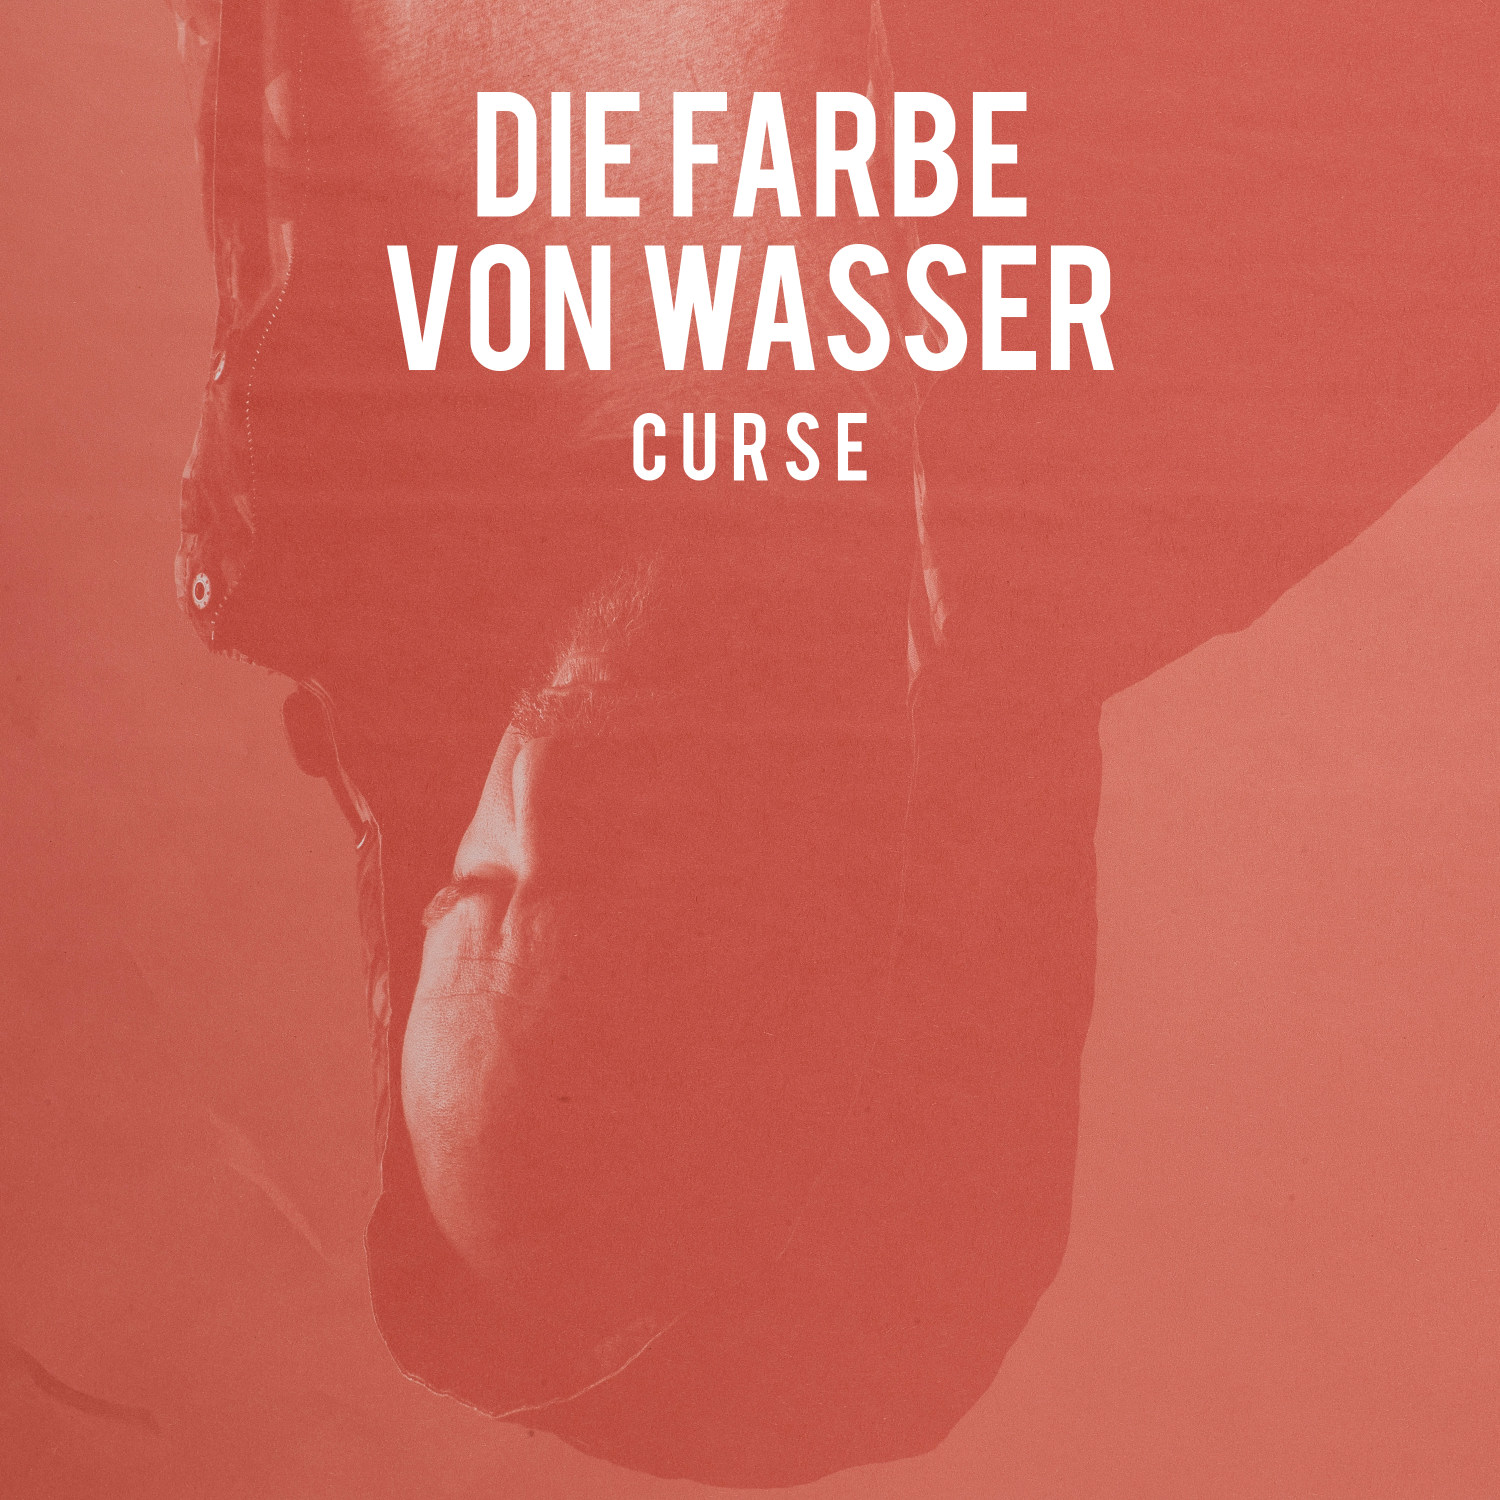 Curse - Die (Ltd. Von (CD) Farbe Edition) - Wasser